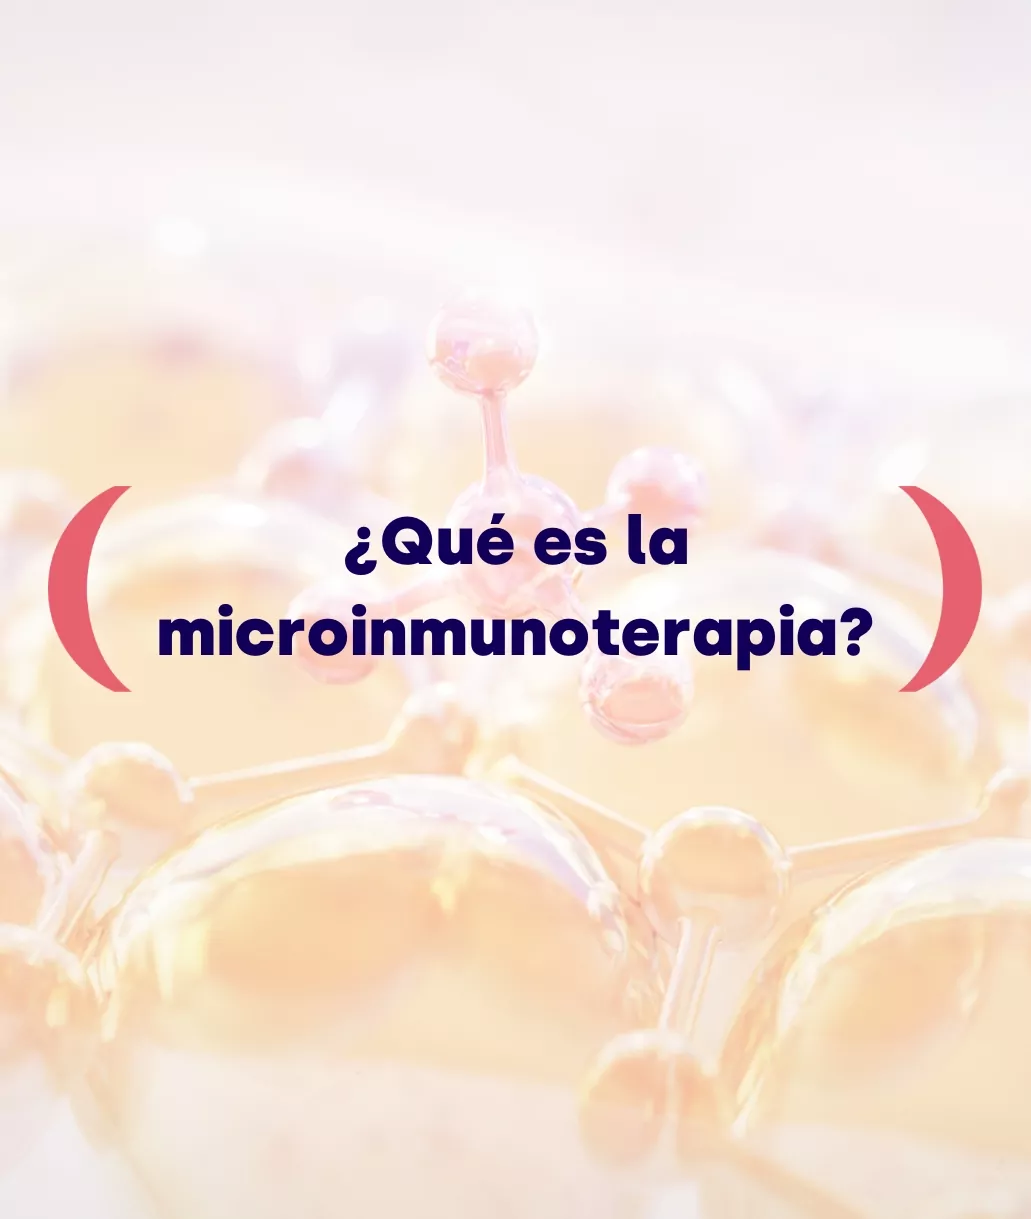 ¿Qué es la microinmunoterapia?